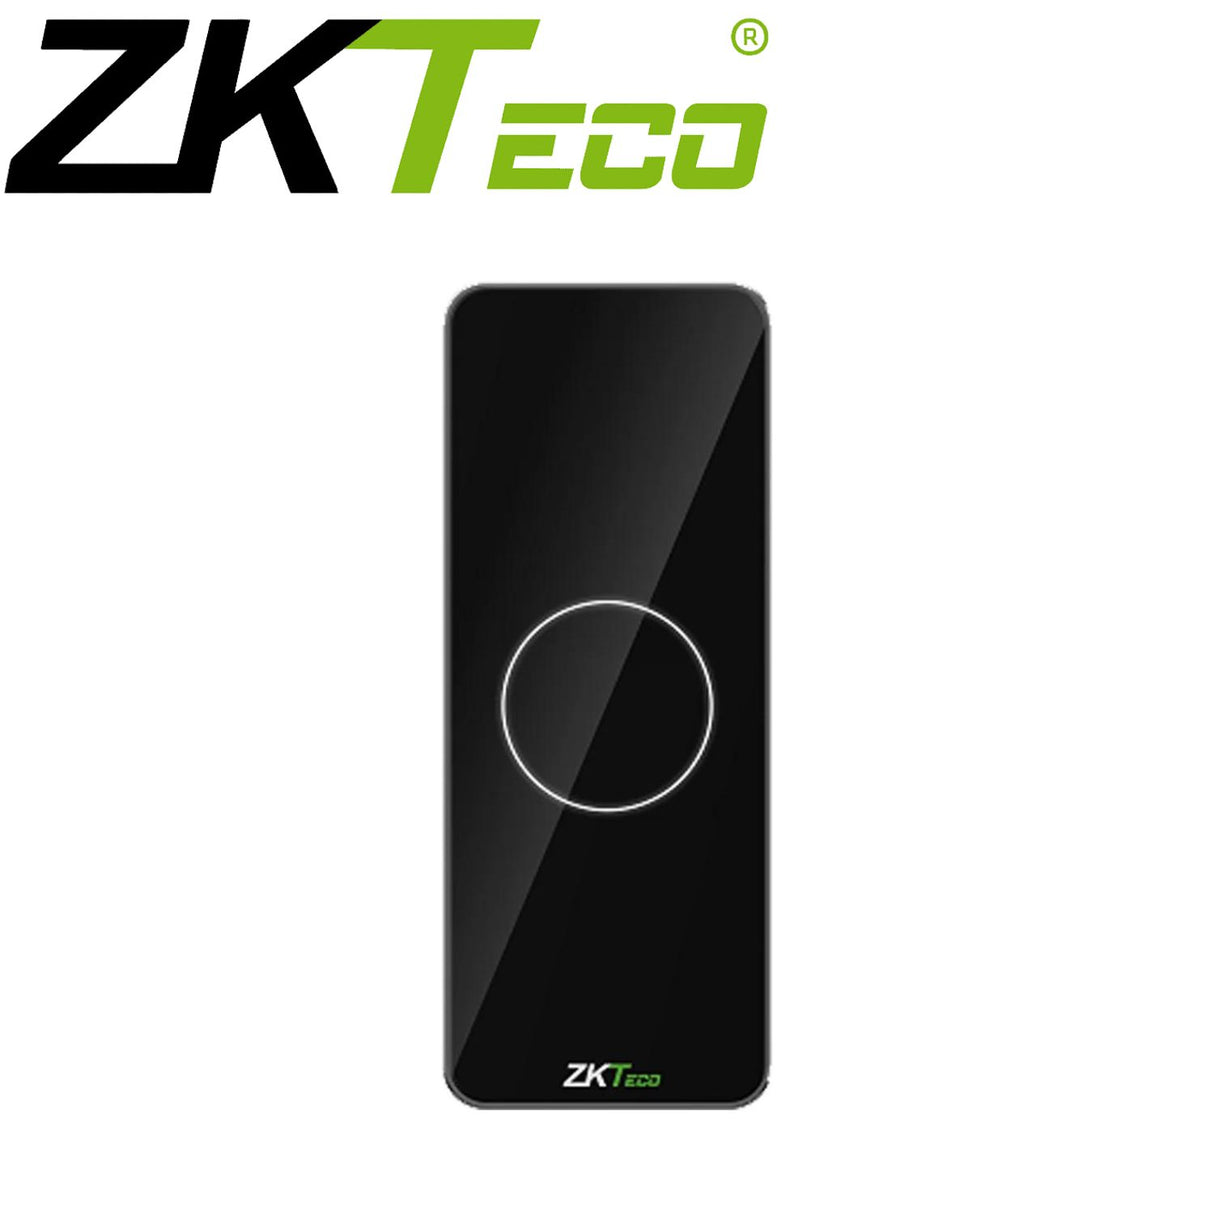 ZKTeco Slimline Mifare Card Reader - PROID101